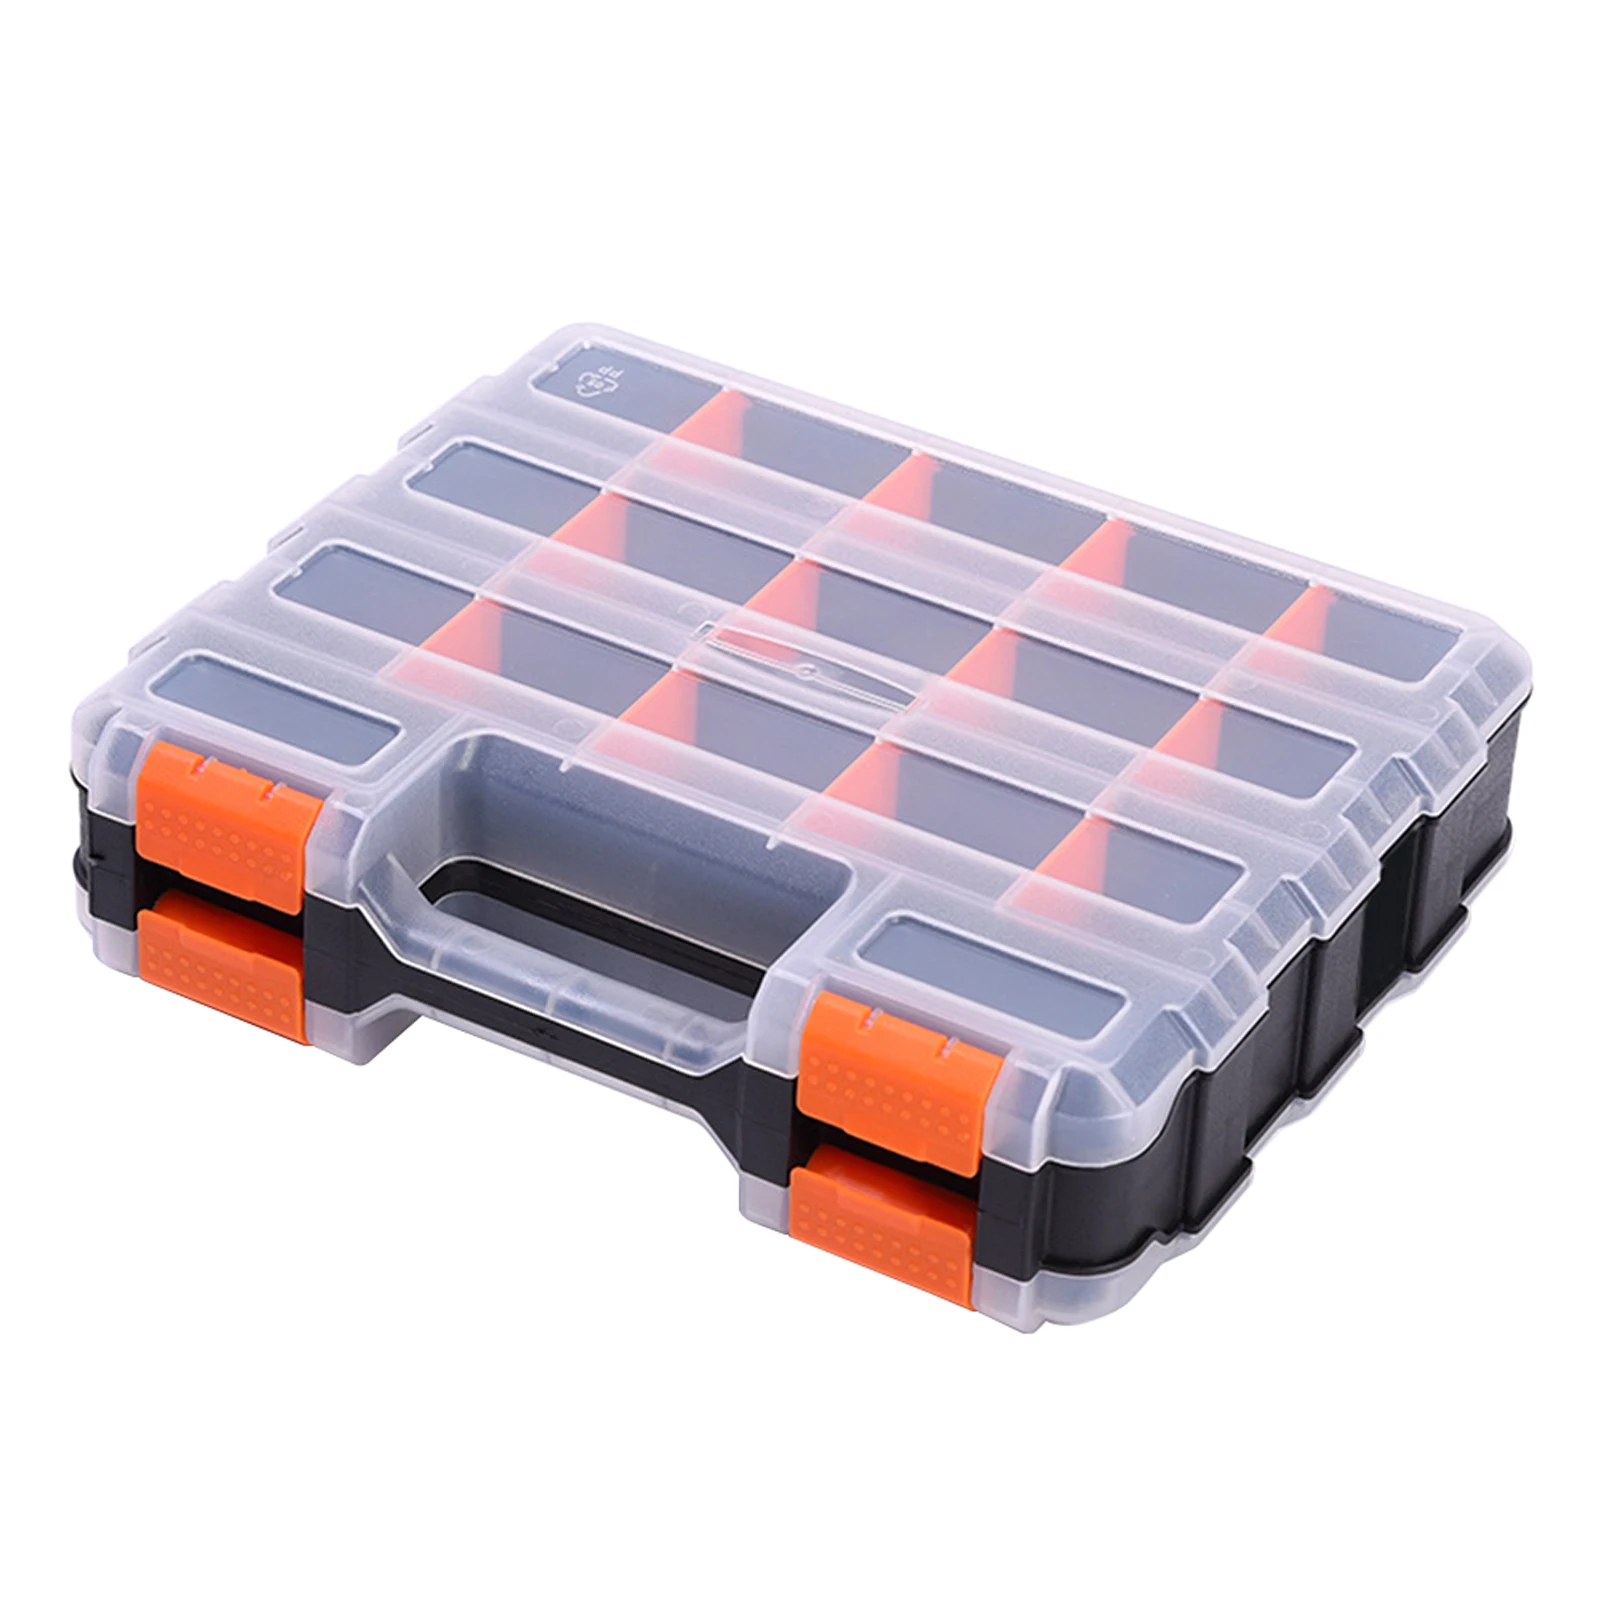 Schrauben Doppelseitige Teile Box Für Fach Hardware Organizer Schrauben Lagerung Fall Muttern Nägel Langlebig Kleine Tragbare Werkzeug